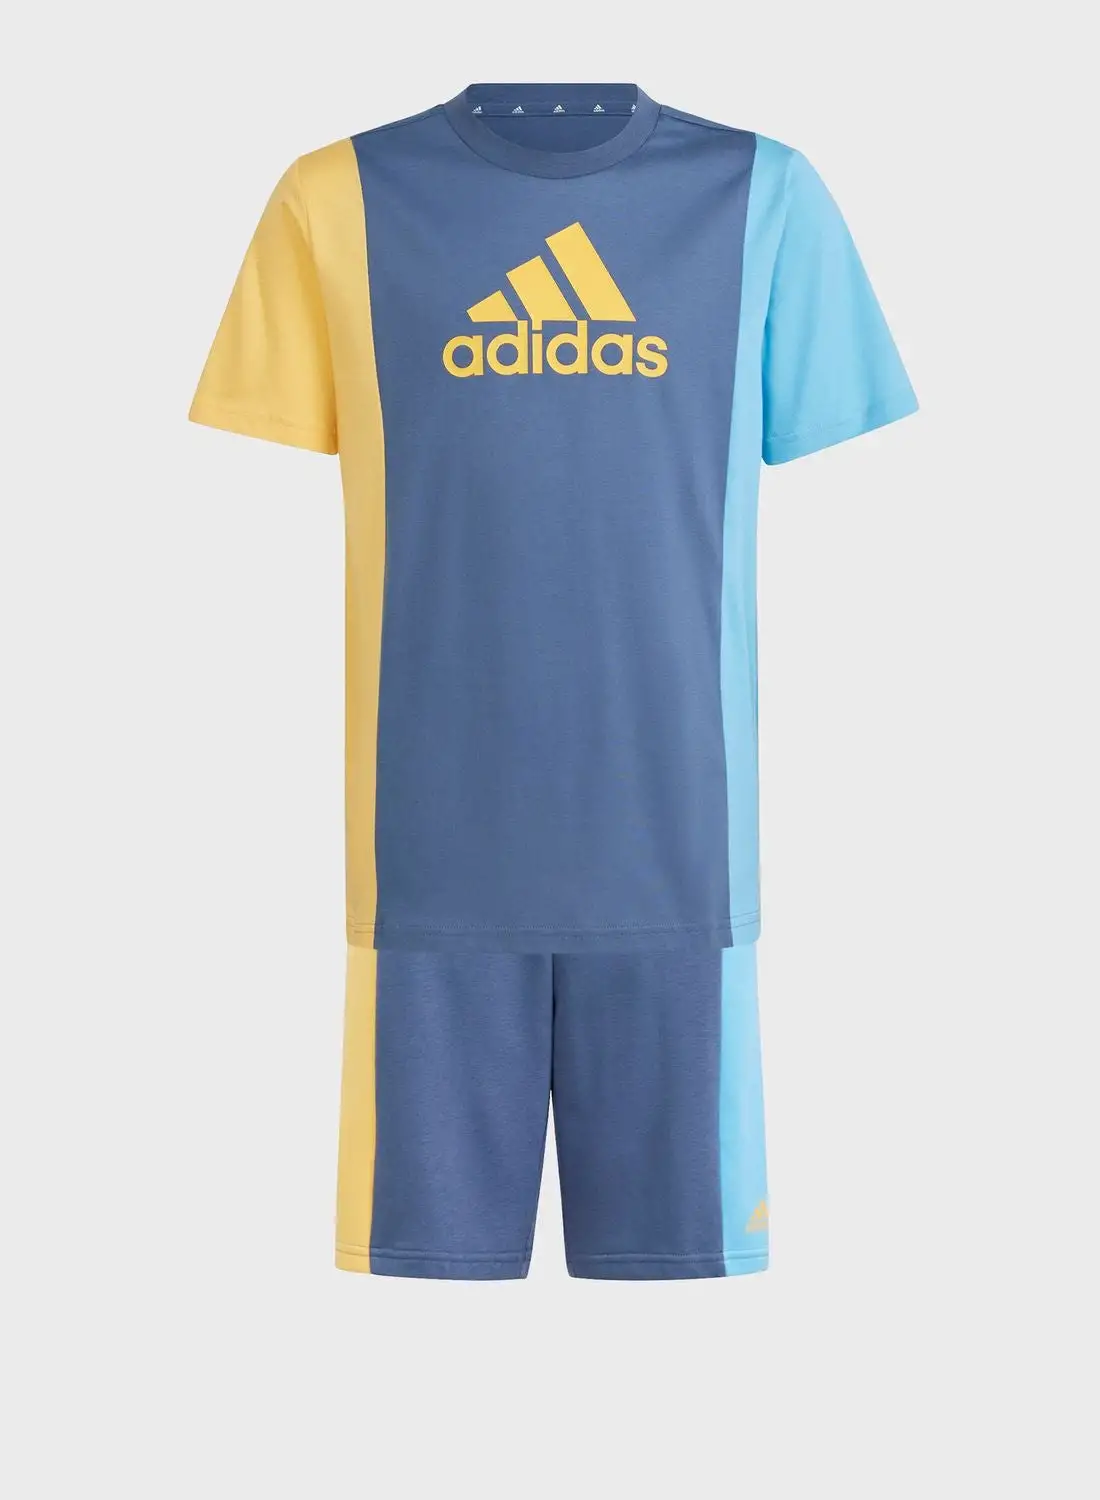 Adidas Kids Club T-Shirt Set